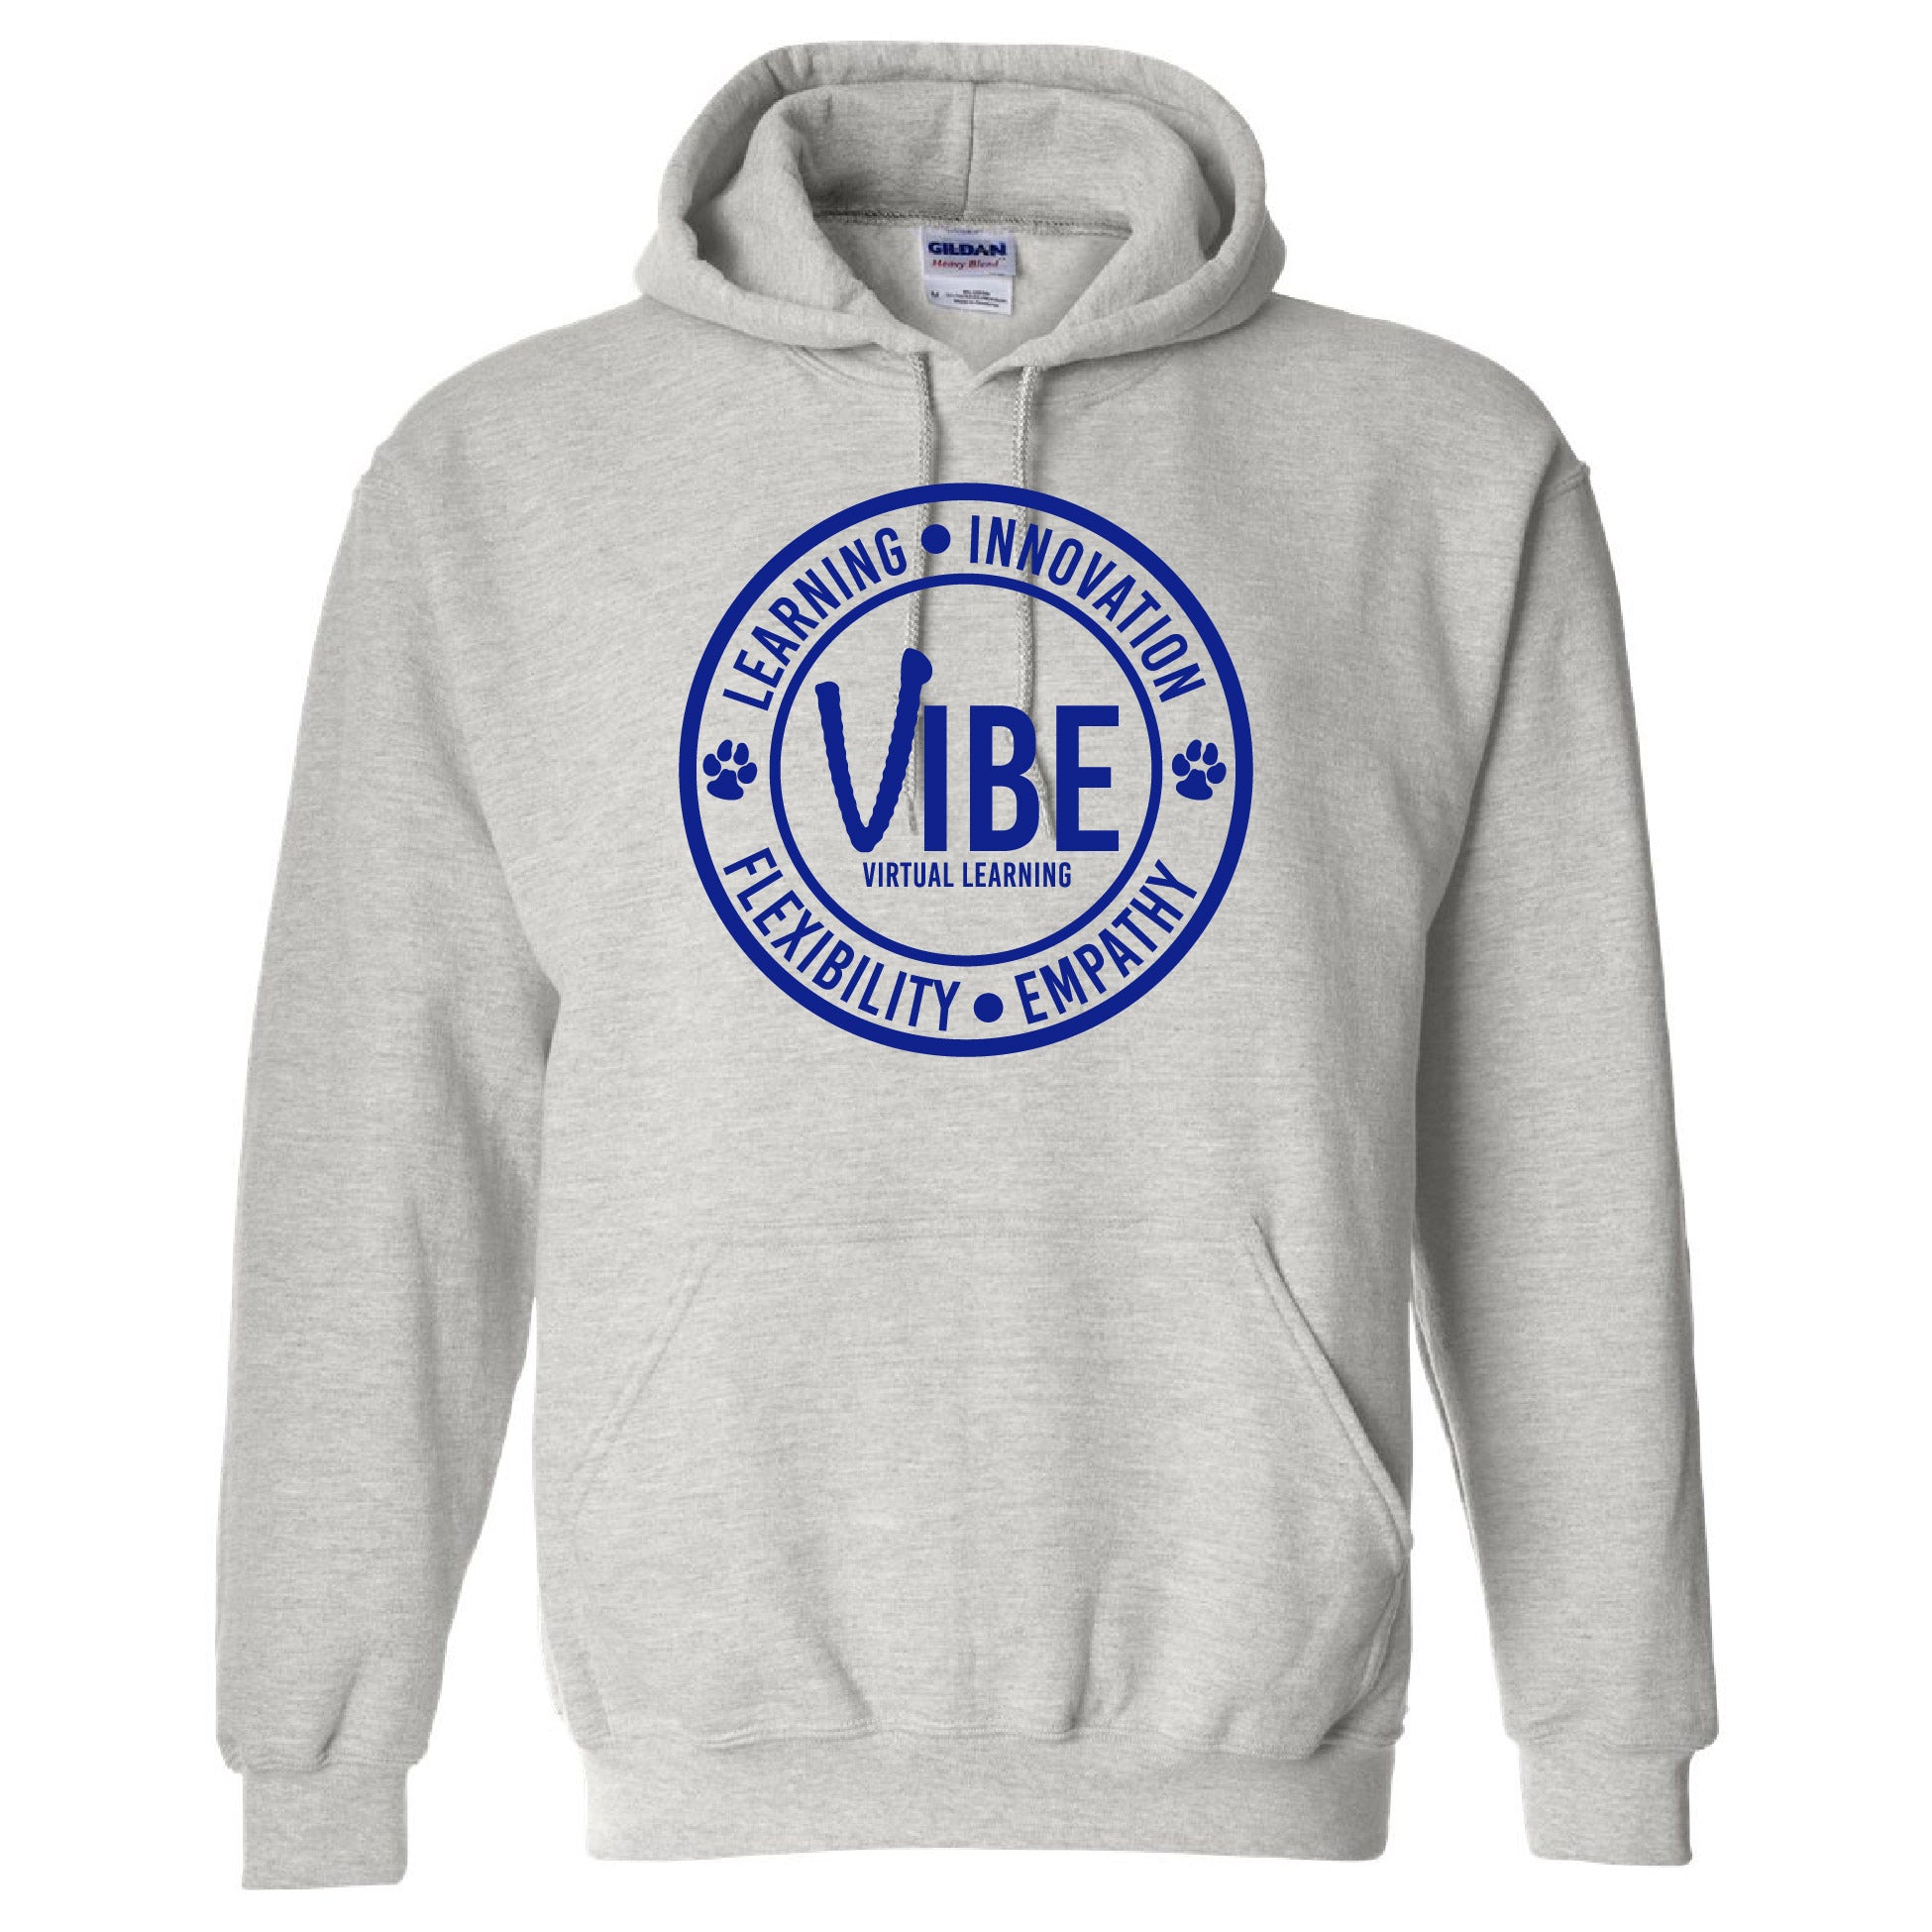 VIBE Hooded Sweatshirt